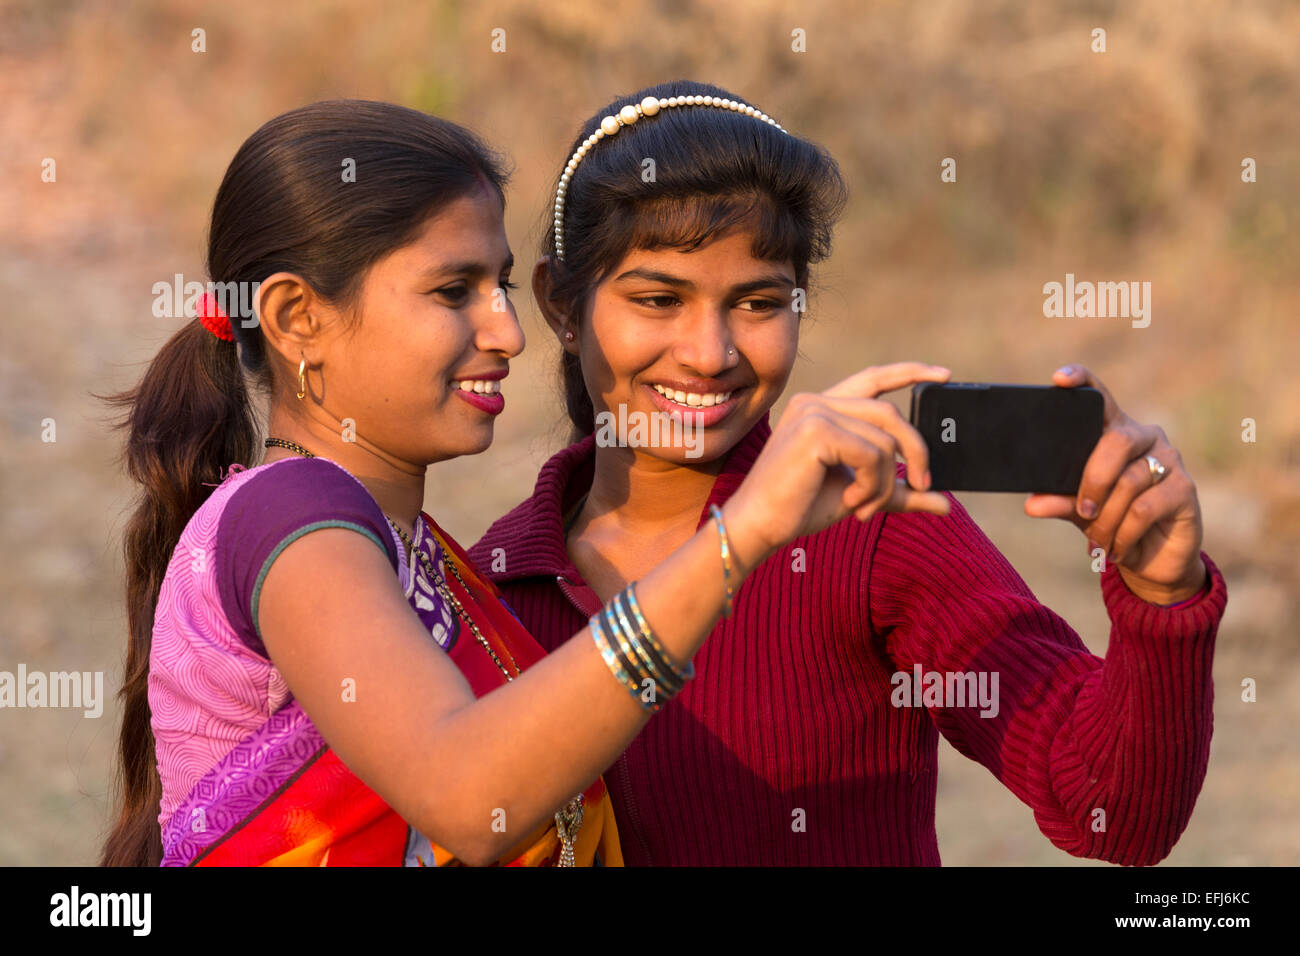 Indien, Uttar Pradesh, Agra, zwei Schwestern nehmen selfie Stockfoto